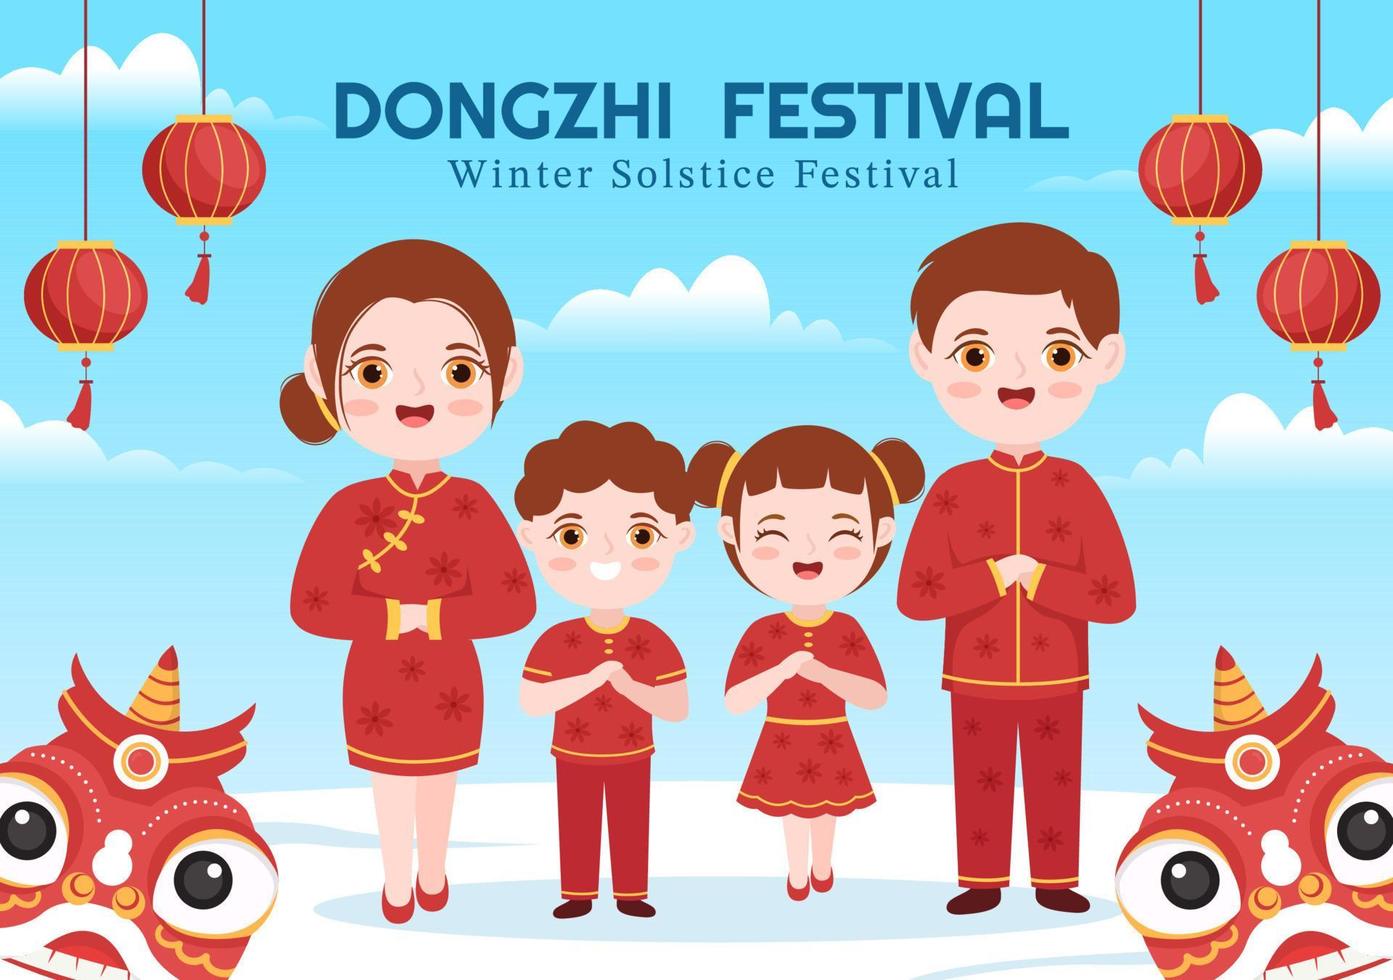 dongzhi eller vinter- solstånd festival mall hand dragen tecknad serie platt illustration med familj njuter kinesisk mat tangyuan och Jiaozi begrepp vektor